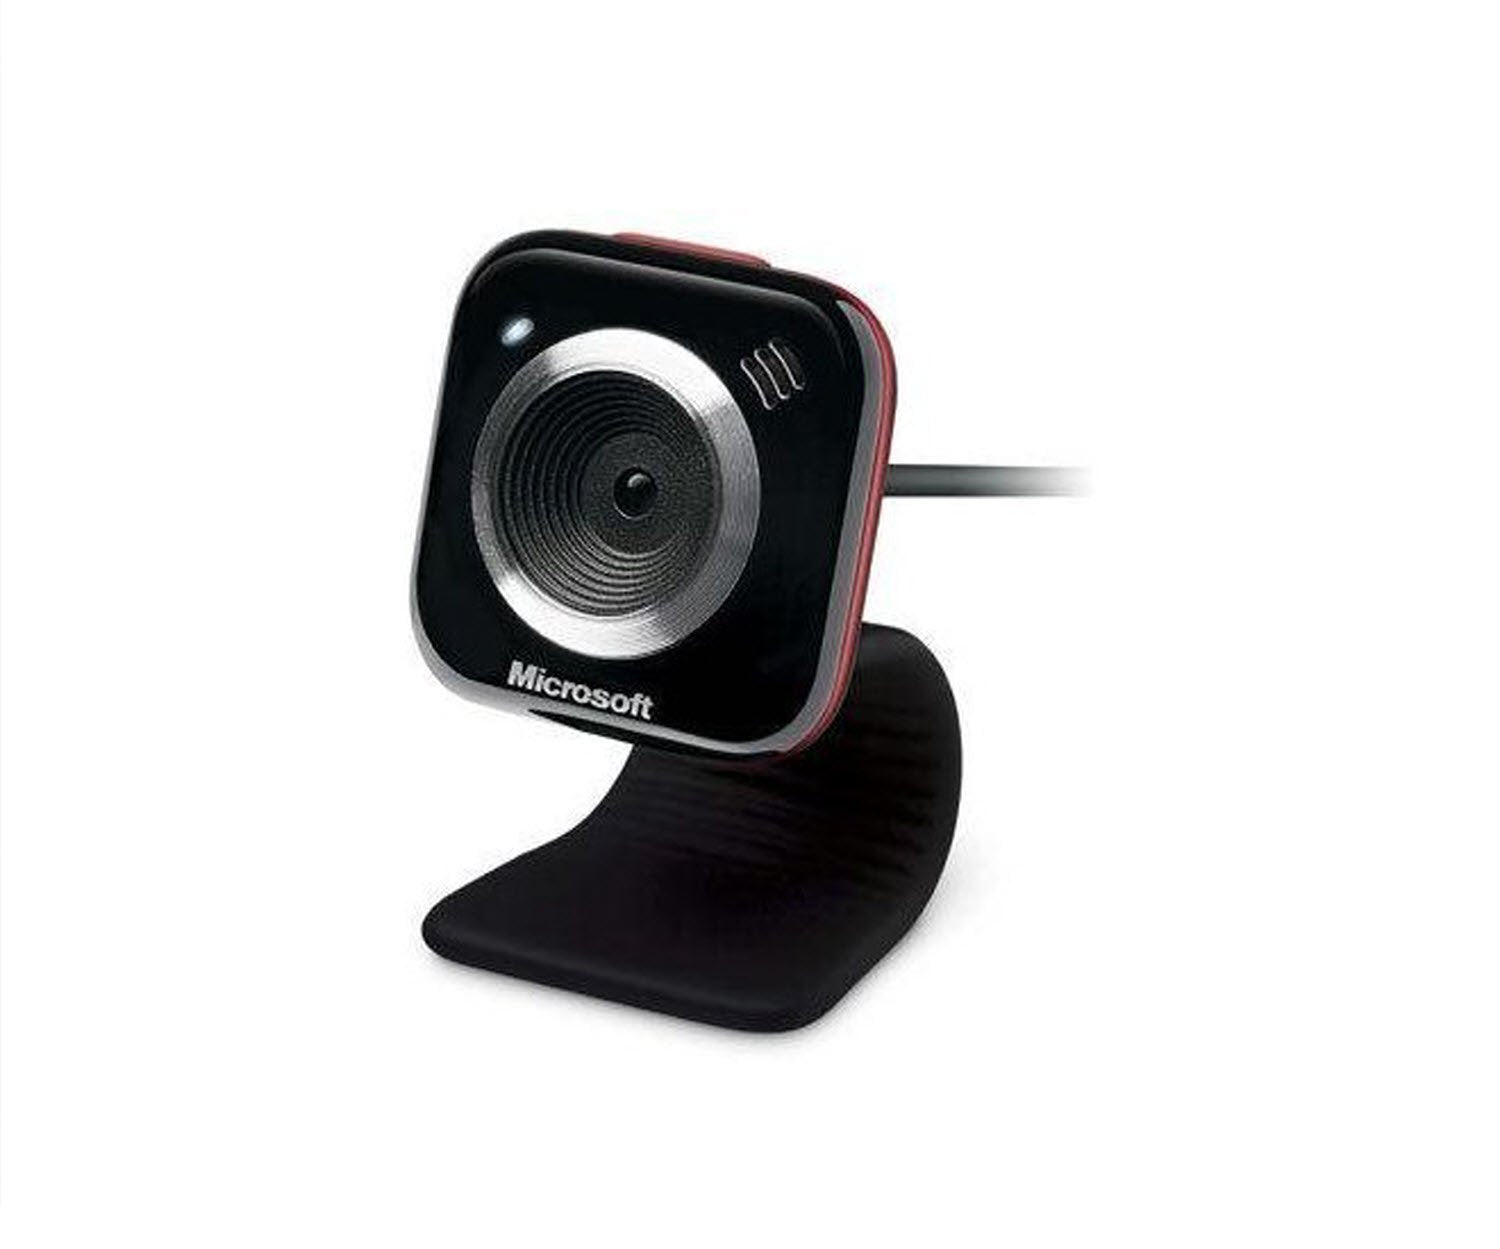 Microsoft LifeCam VX-5000 Webcam (Red Accent)